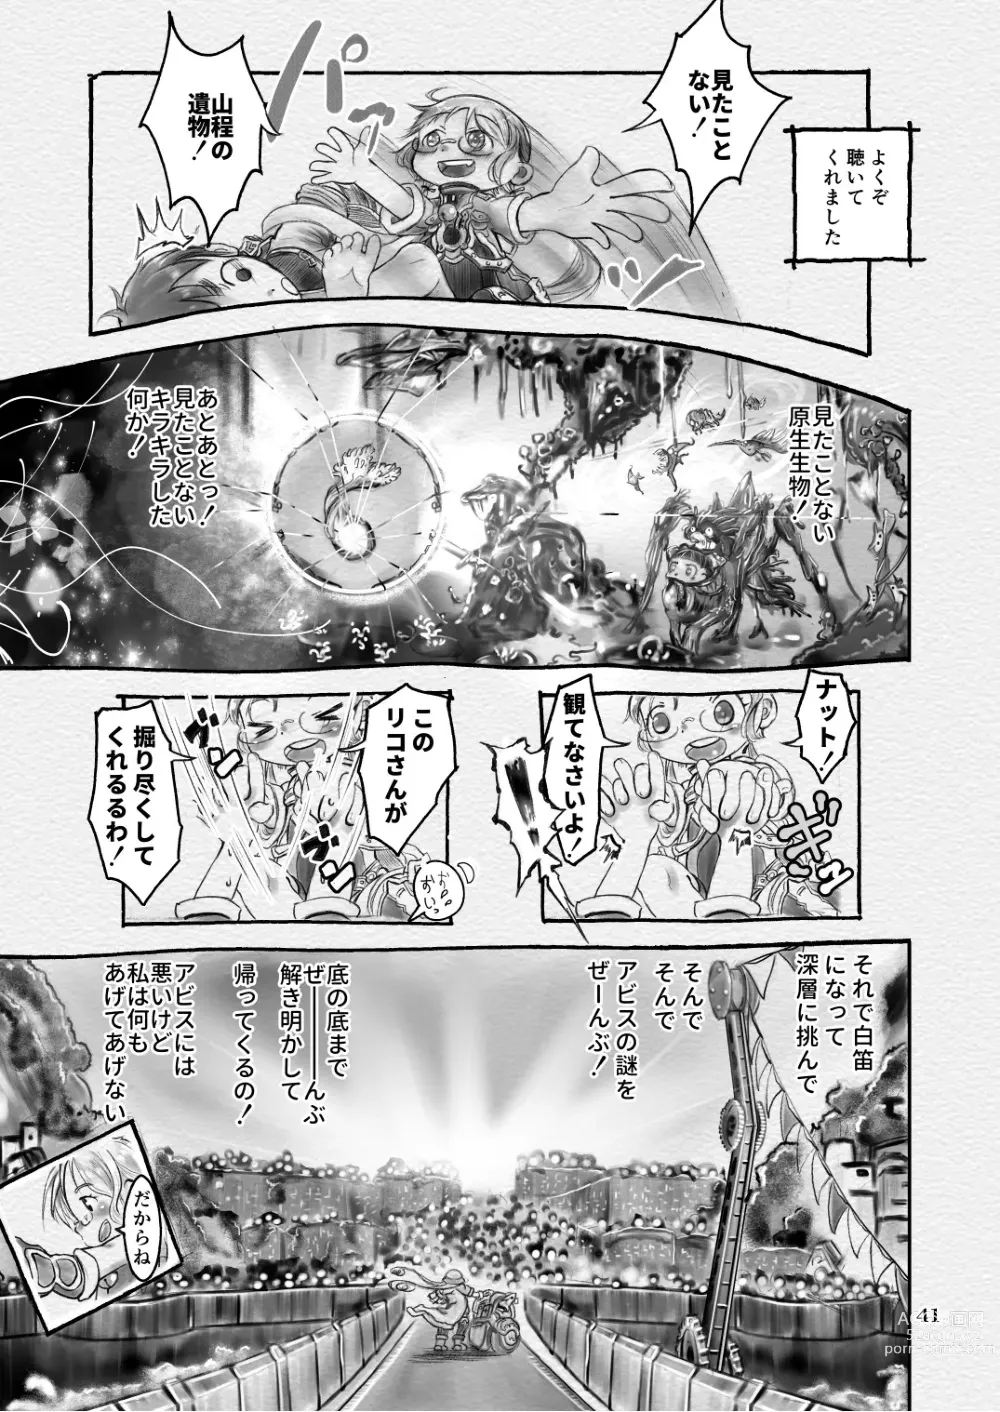 Page 41 of doujinshi Sakubun